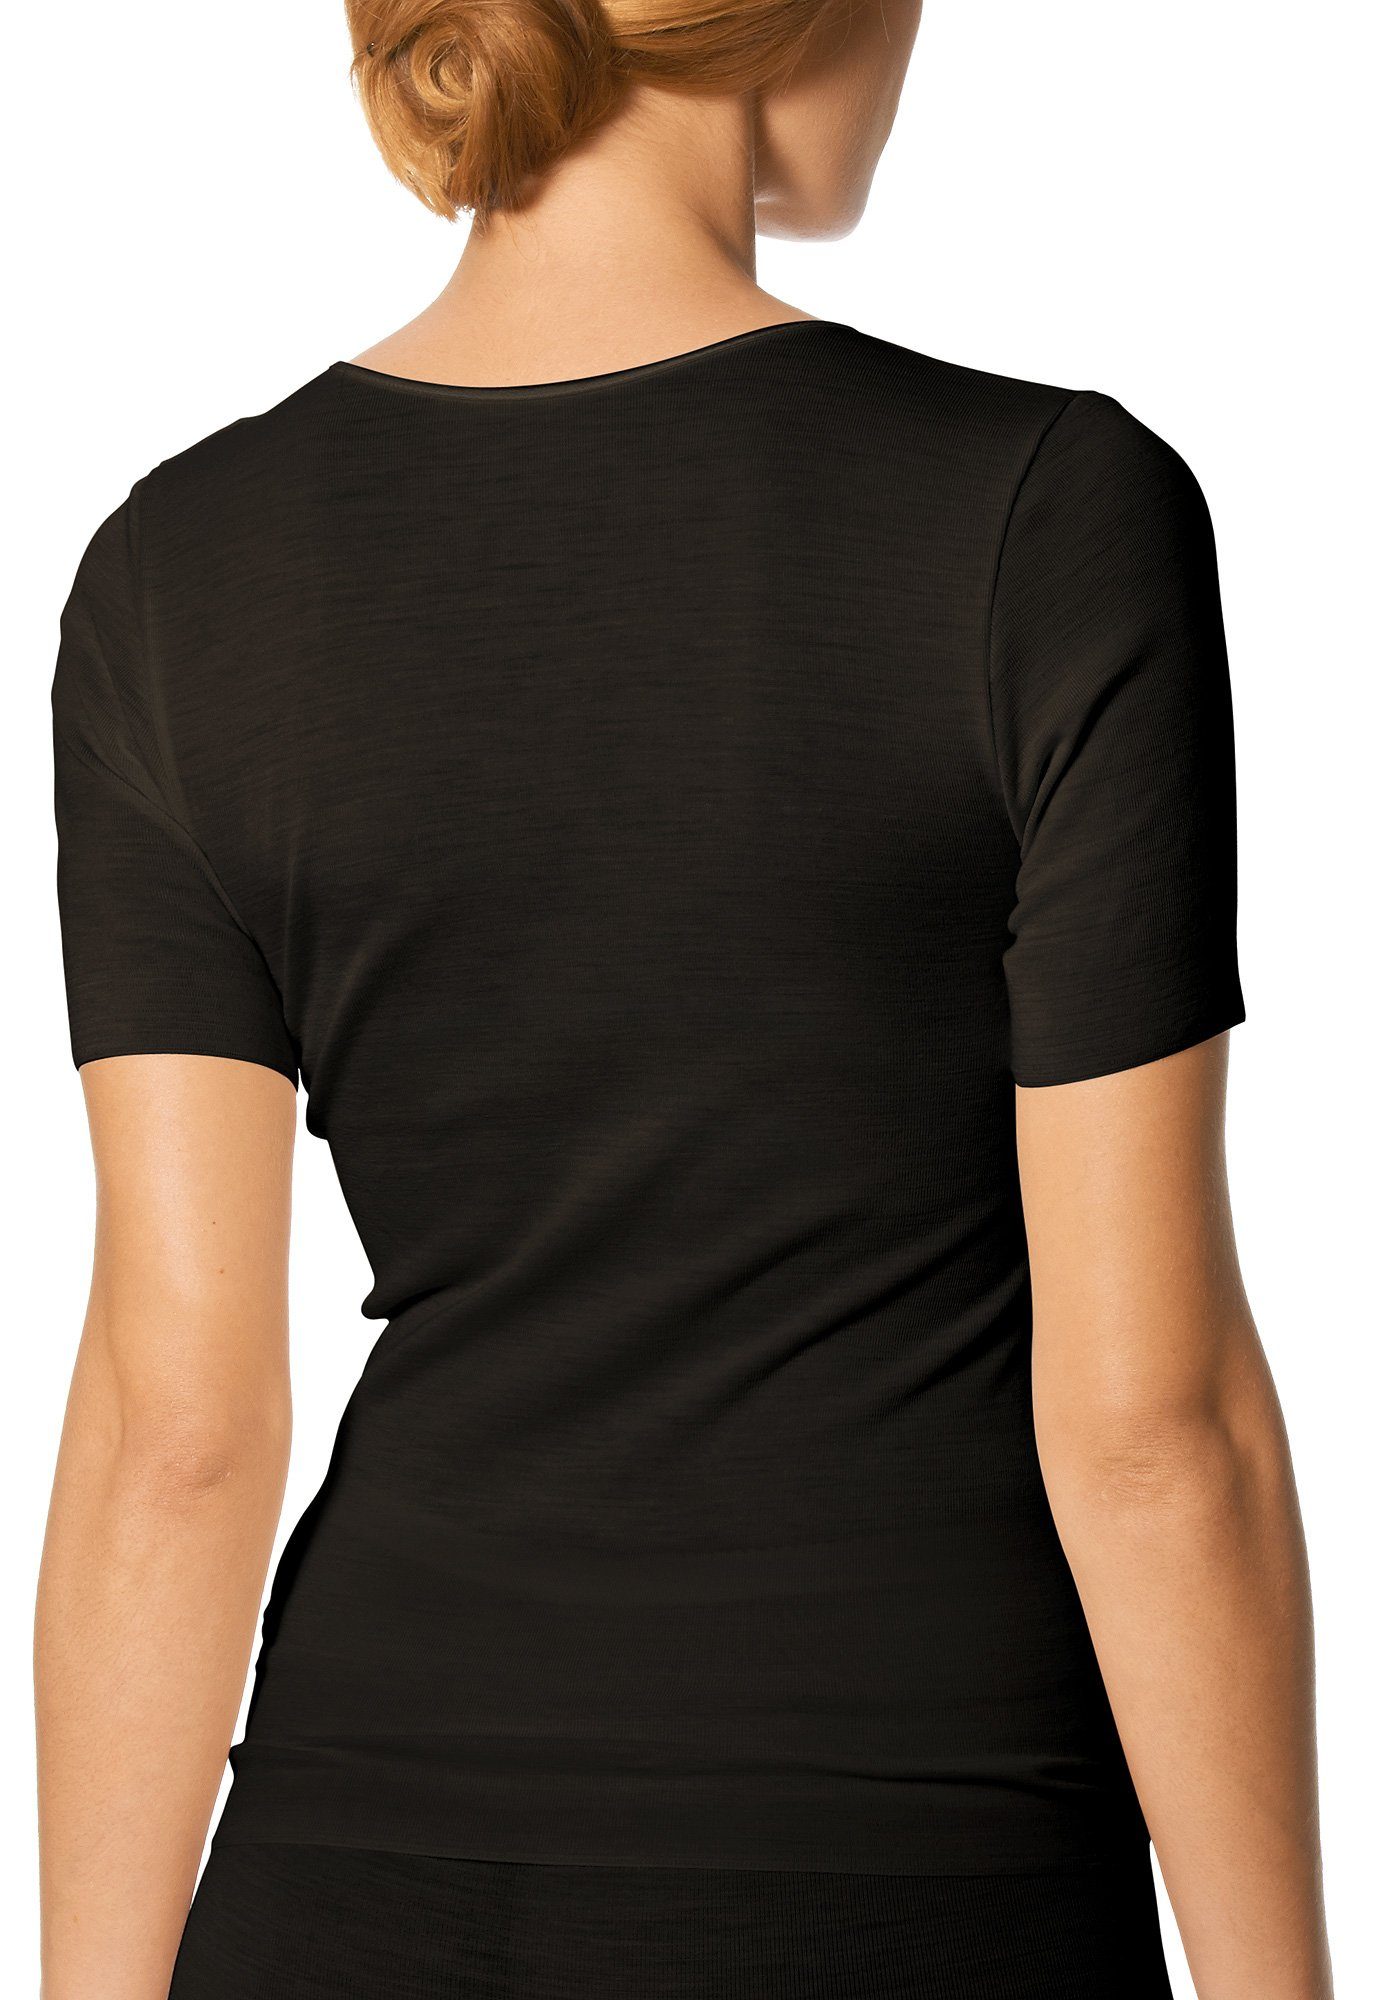 Stück, Serie (1 Stück) 1-St., Mey wärmend Thermounterhemd Mey Exquisite 66576 Shirt 1 schwarz